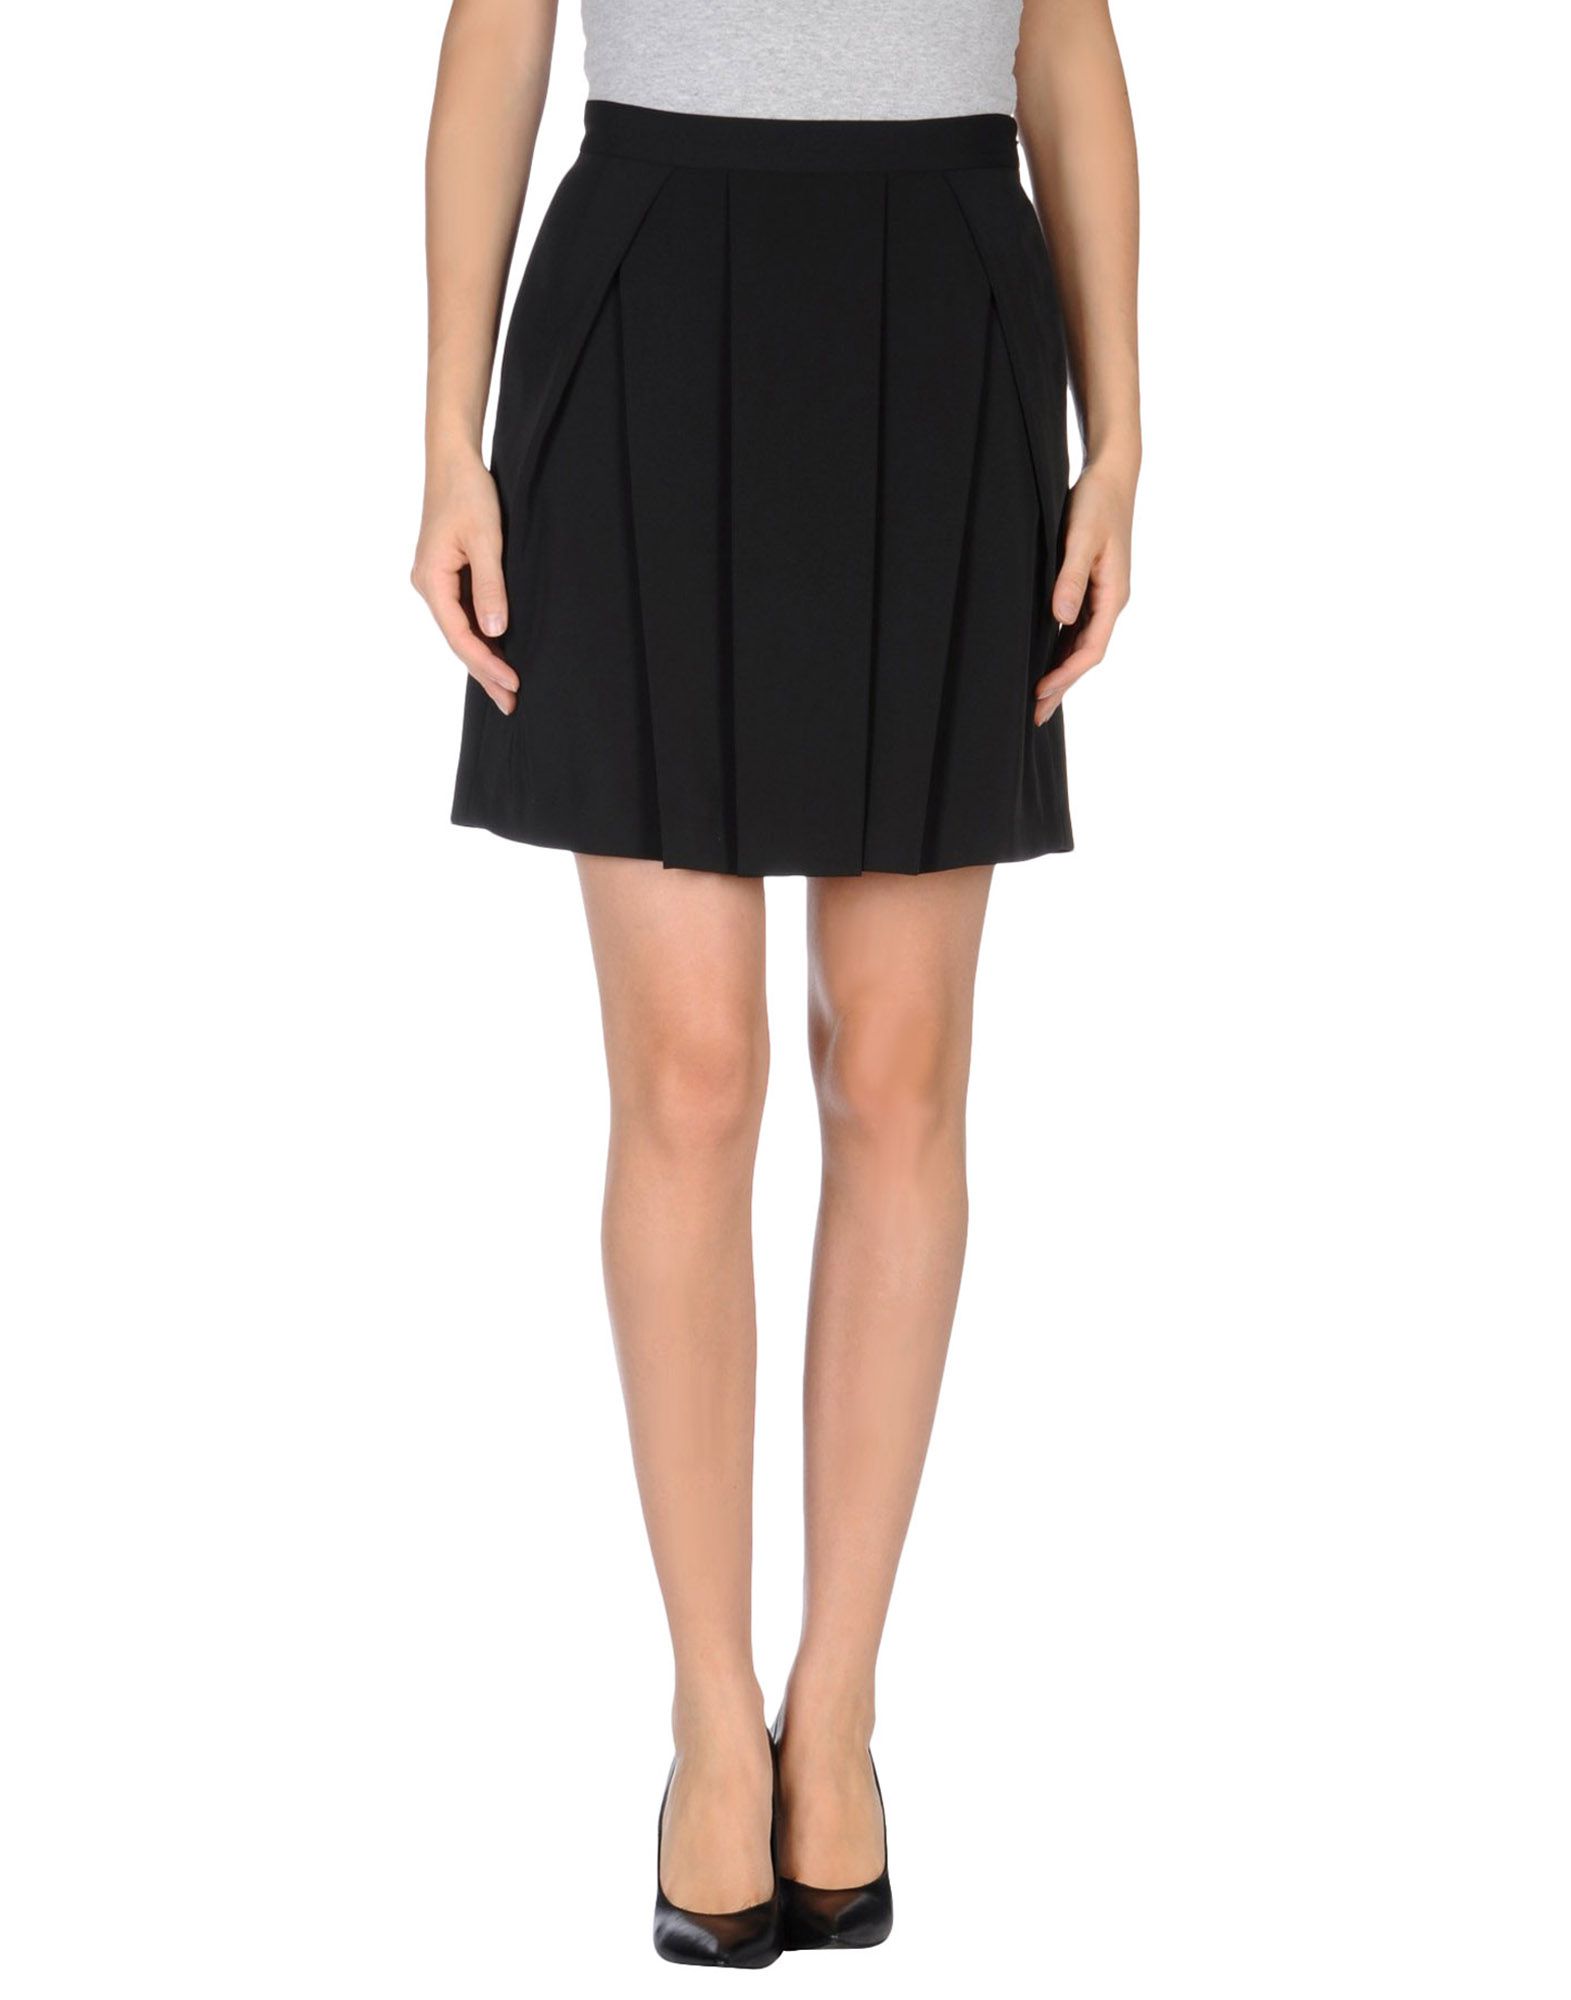 Gianfranco Ferré Knee Length Skirt in Black | Lyst